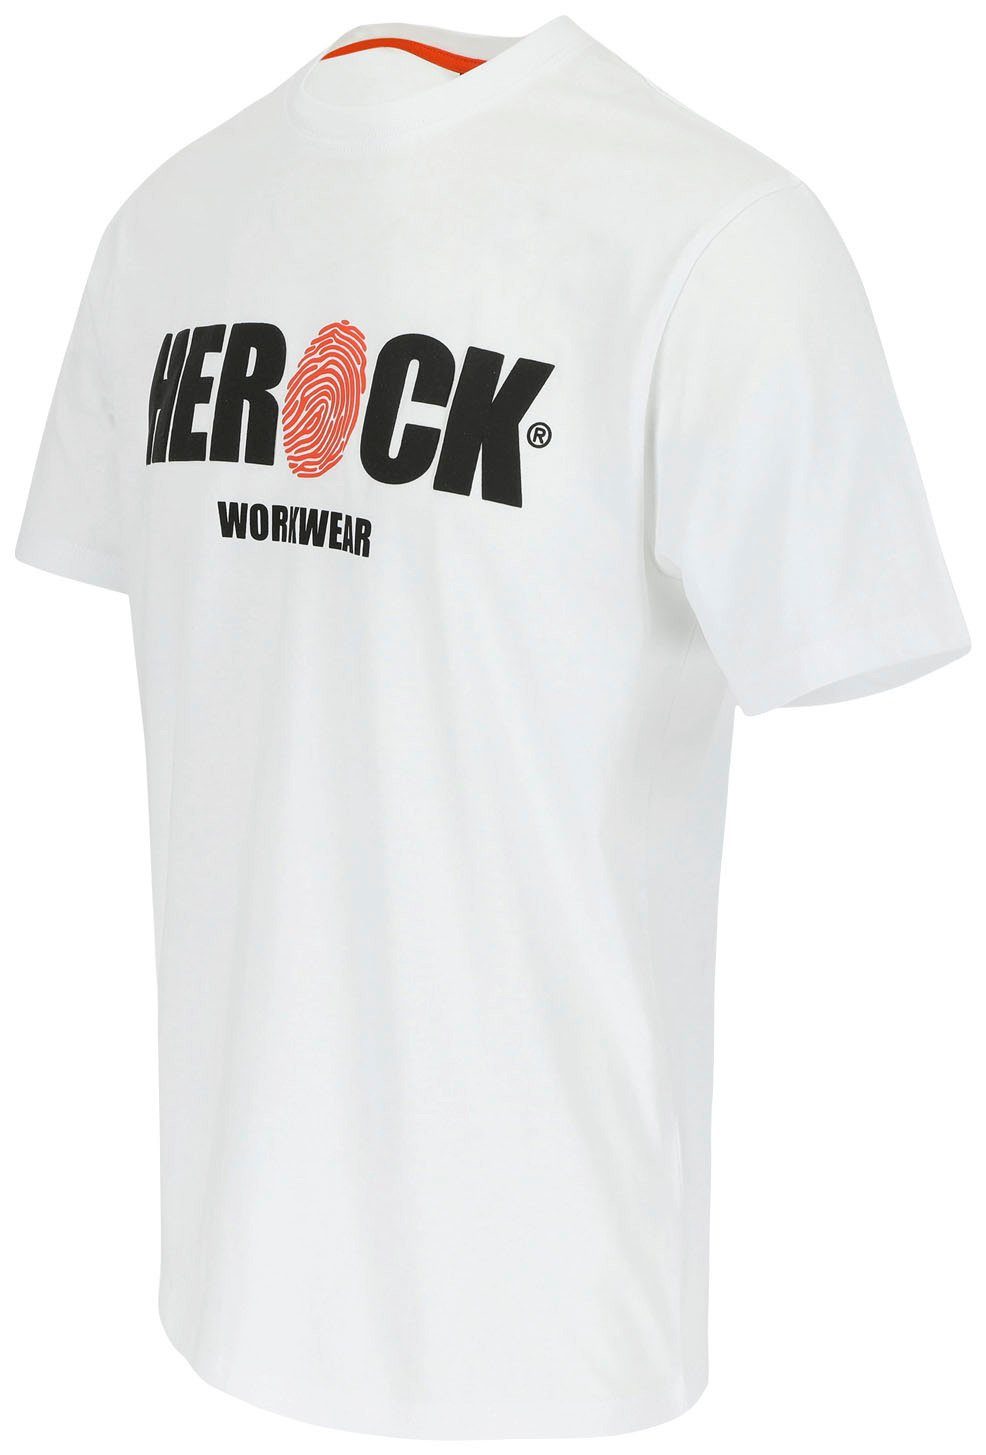 mit angenehmes T-Shirt Herock weiß ENI Tragegefühl Baumwolle, Herock®-Aufdruck, Rundhals,